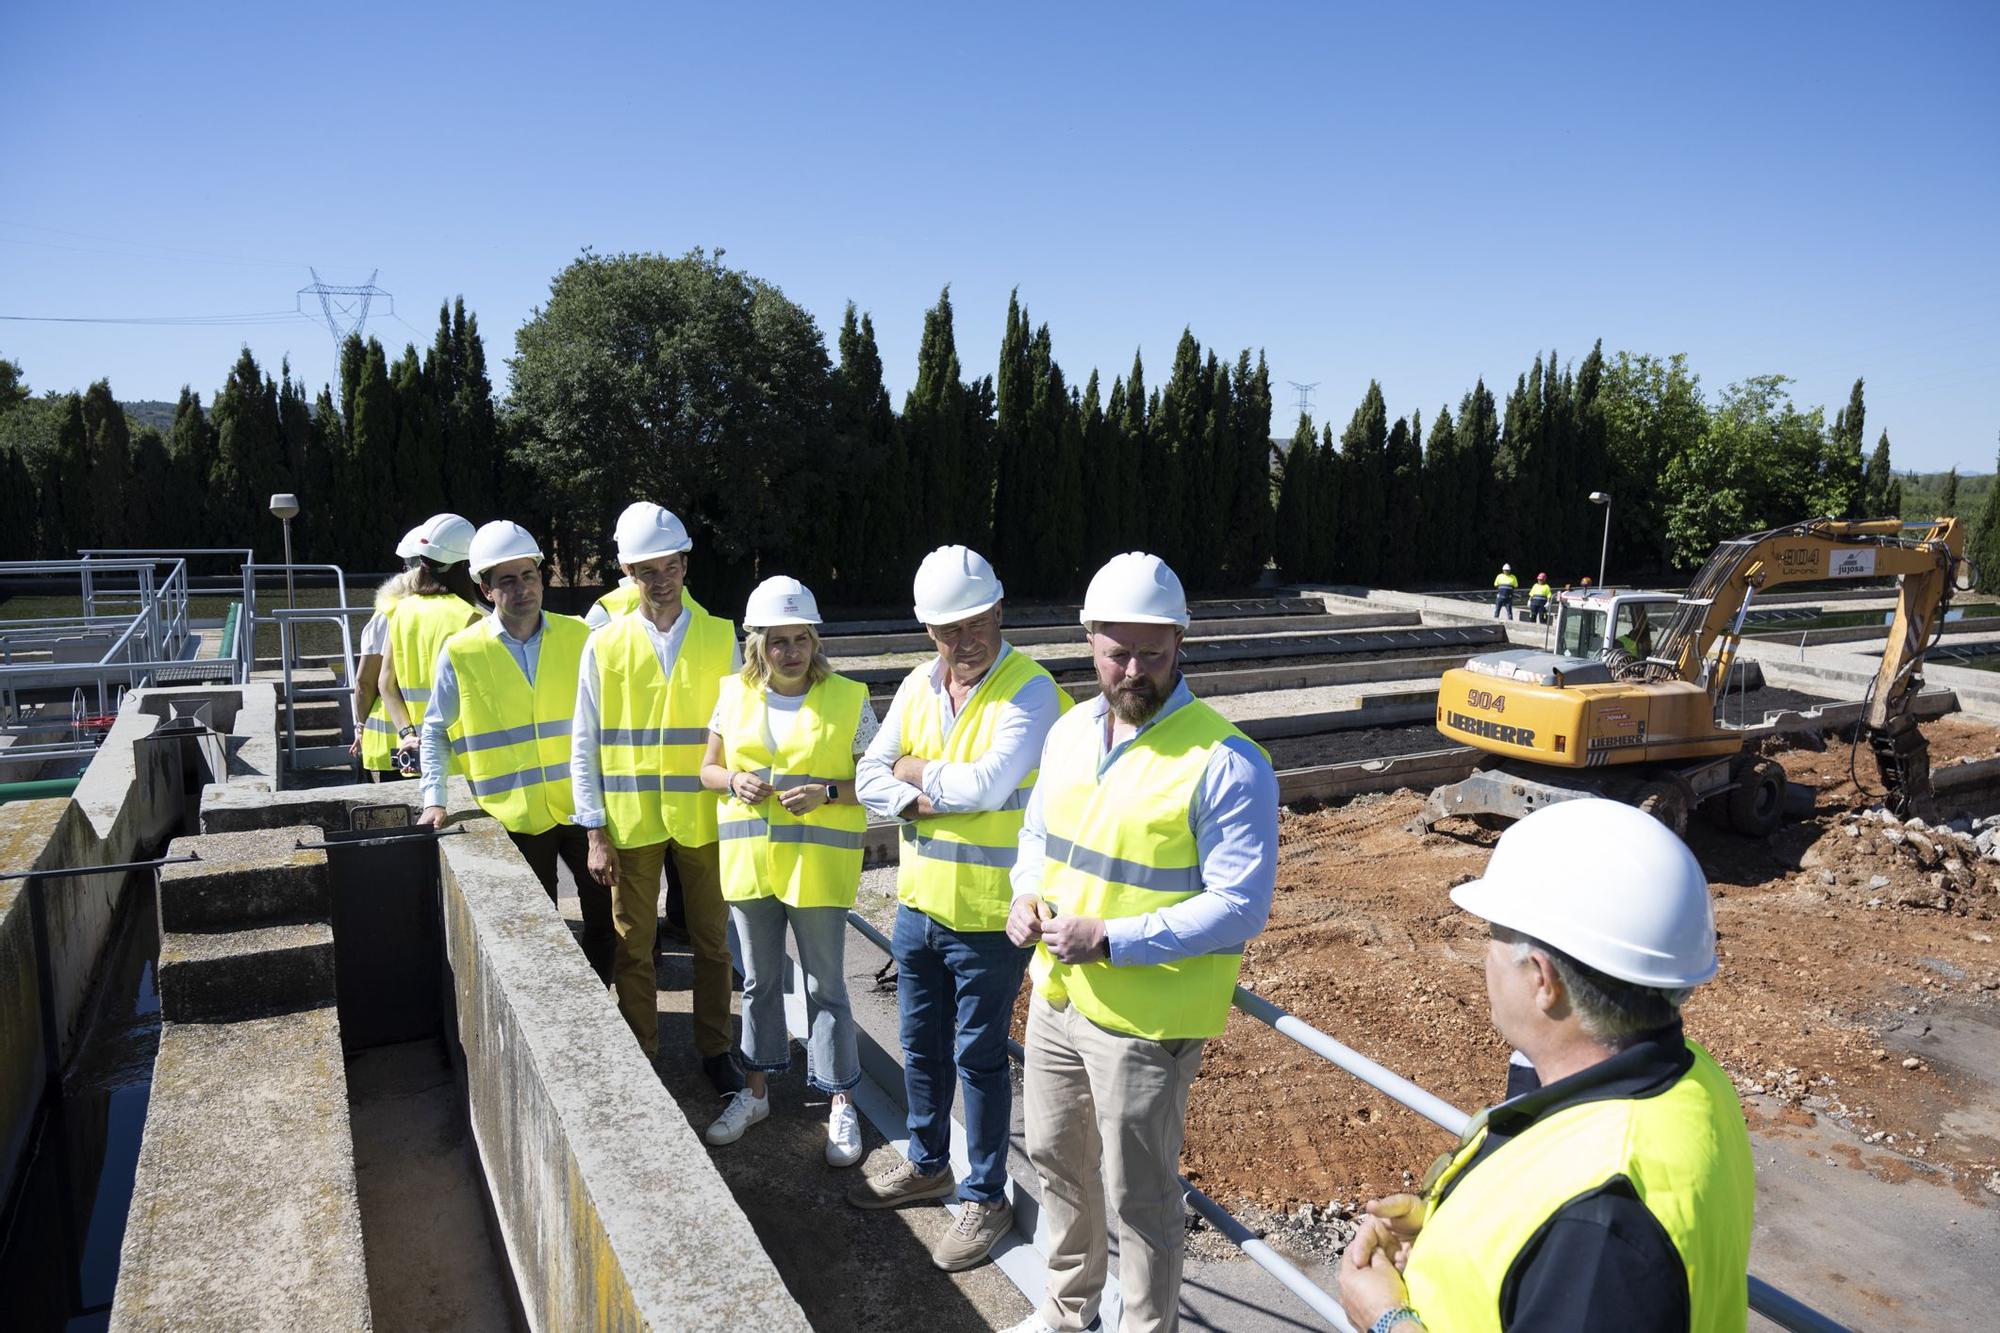 La presidenta supervisió las obras de la estación depuradora Benlloch-Vilanova d’Alcolea, una de las actuaciones en materia hídrica.